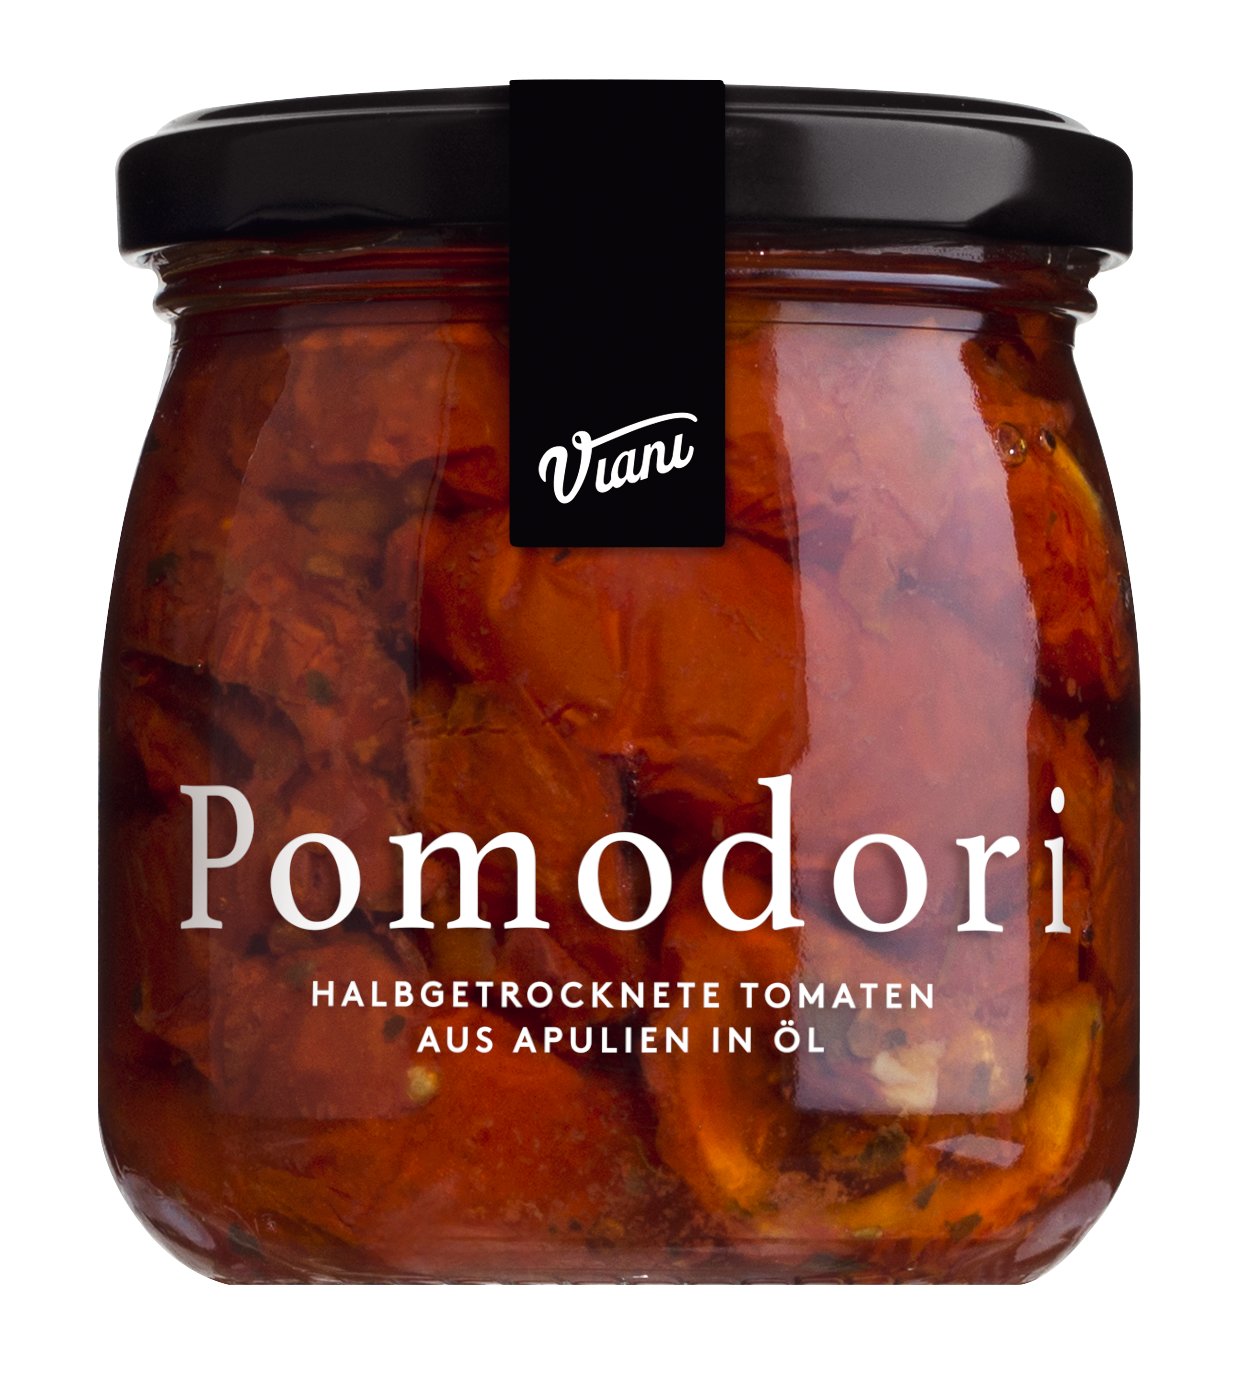 Viani Pomodori - halbgetrocknete Tomaten aus Apulien